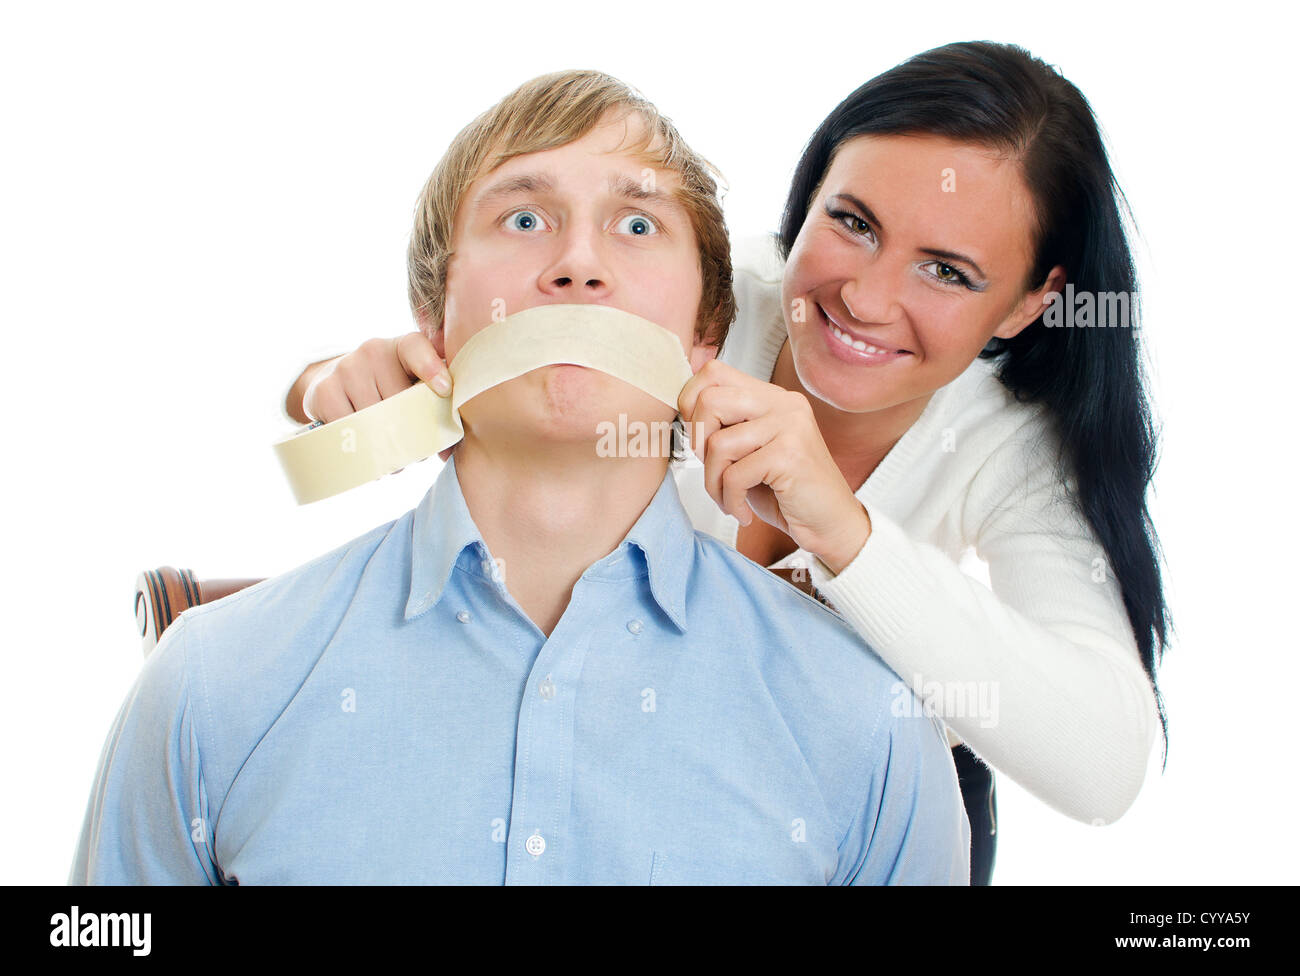 Frau Anwendung Tape am Mund des Mannes. Isoliert auf weiss Stockfotografie  - Alamy